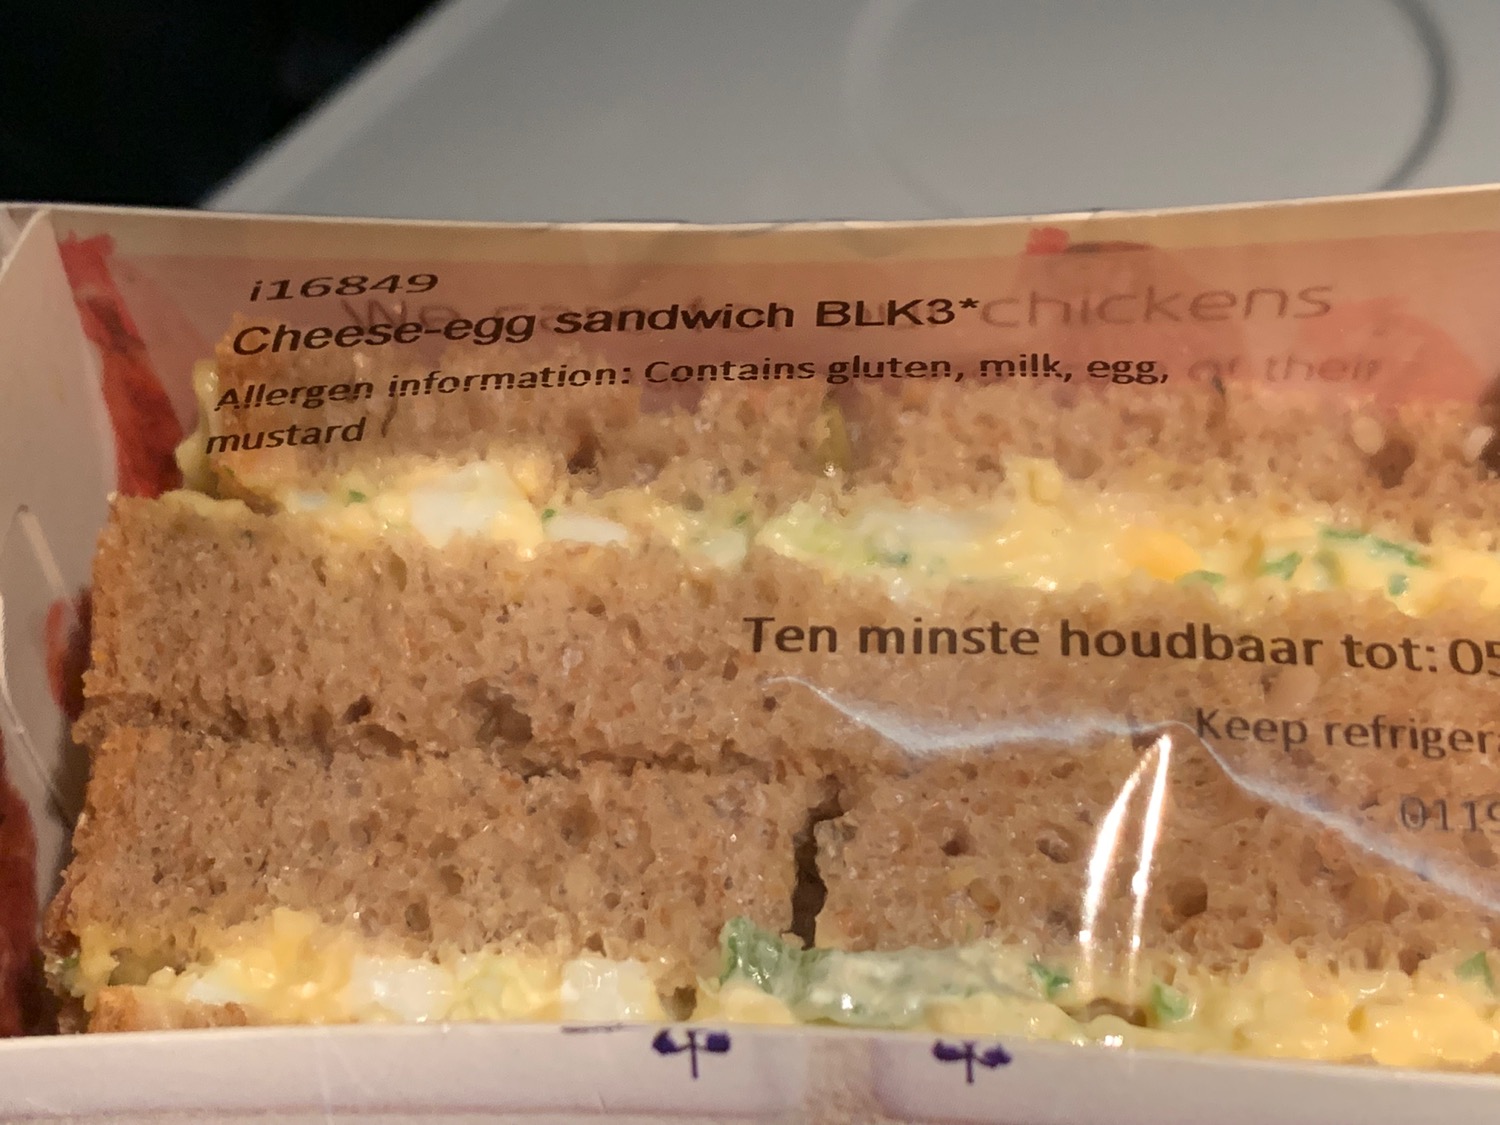 a sandwich in a package